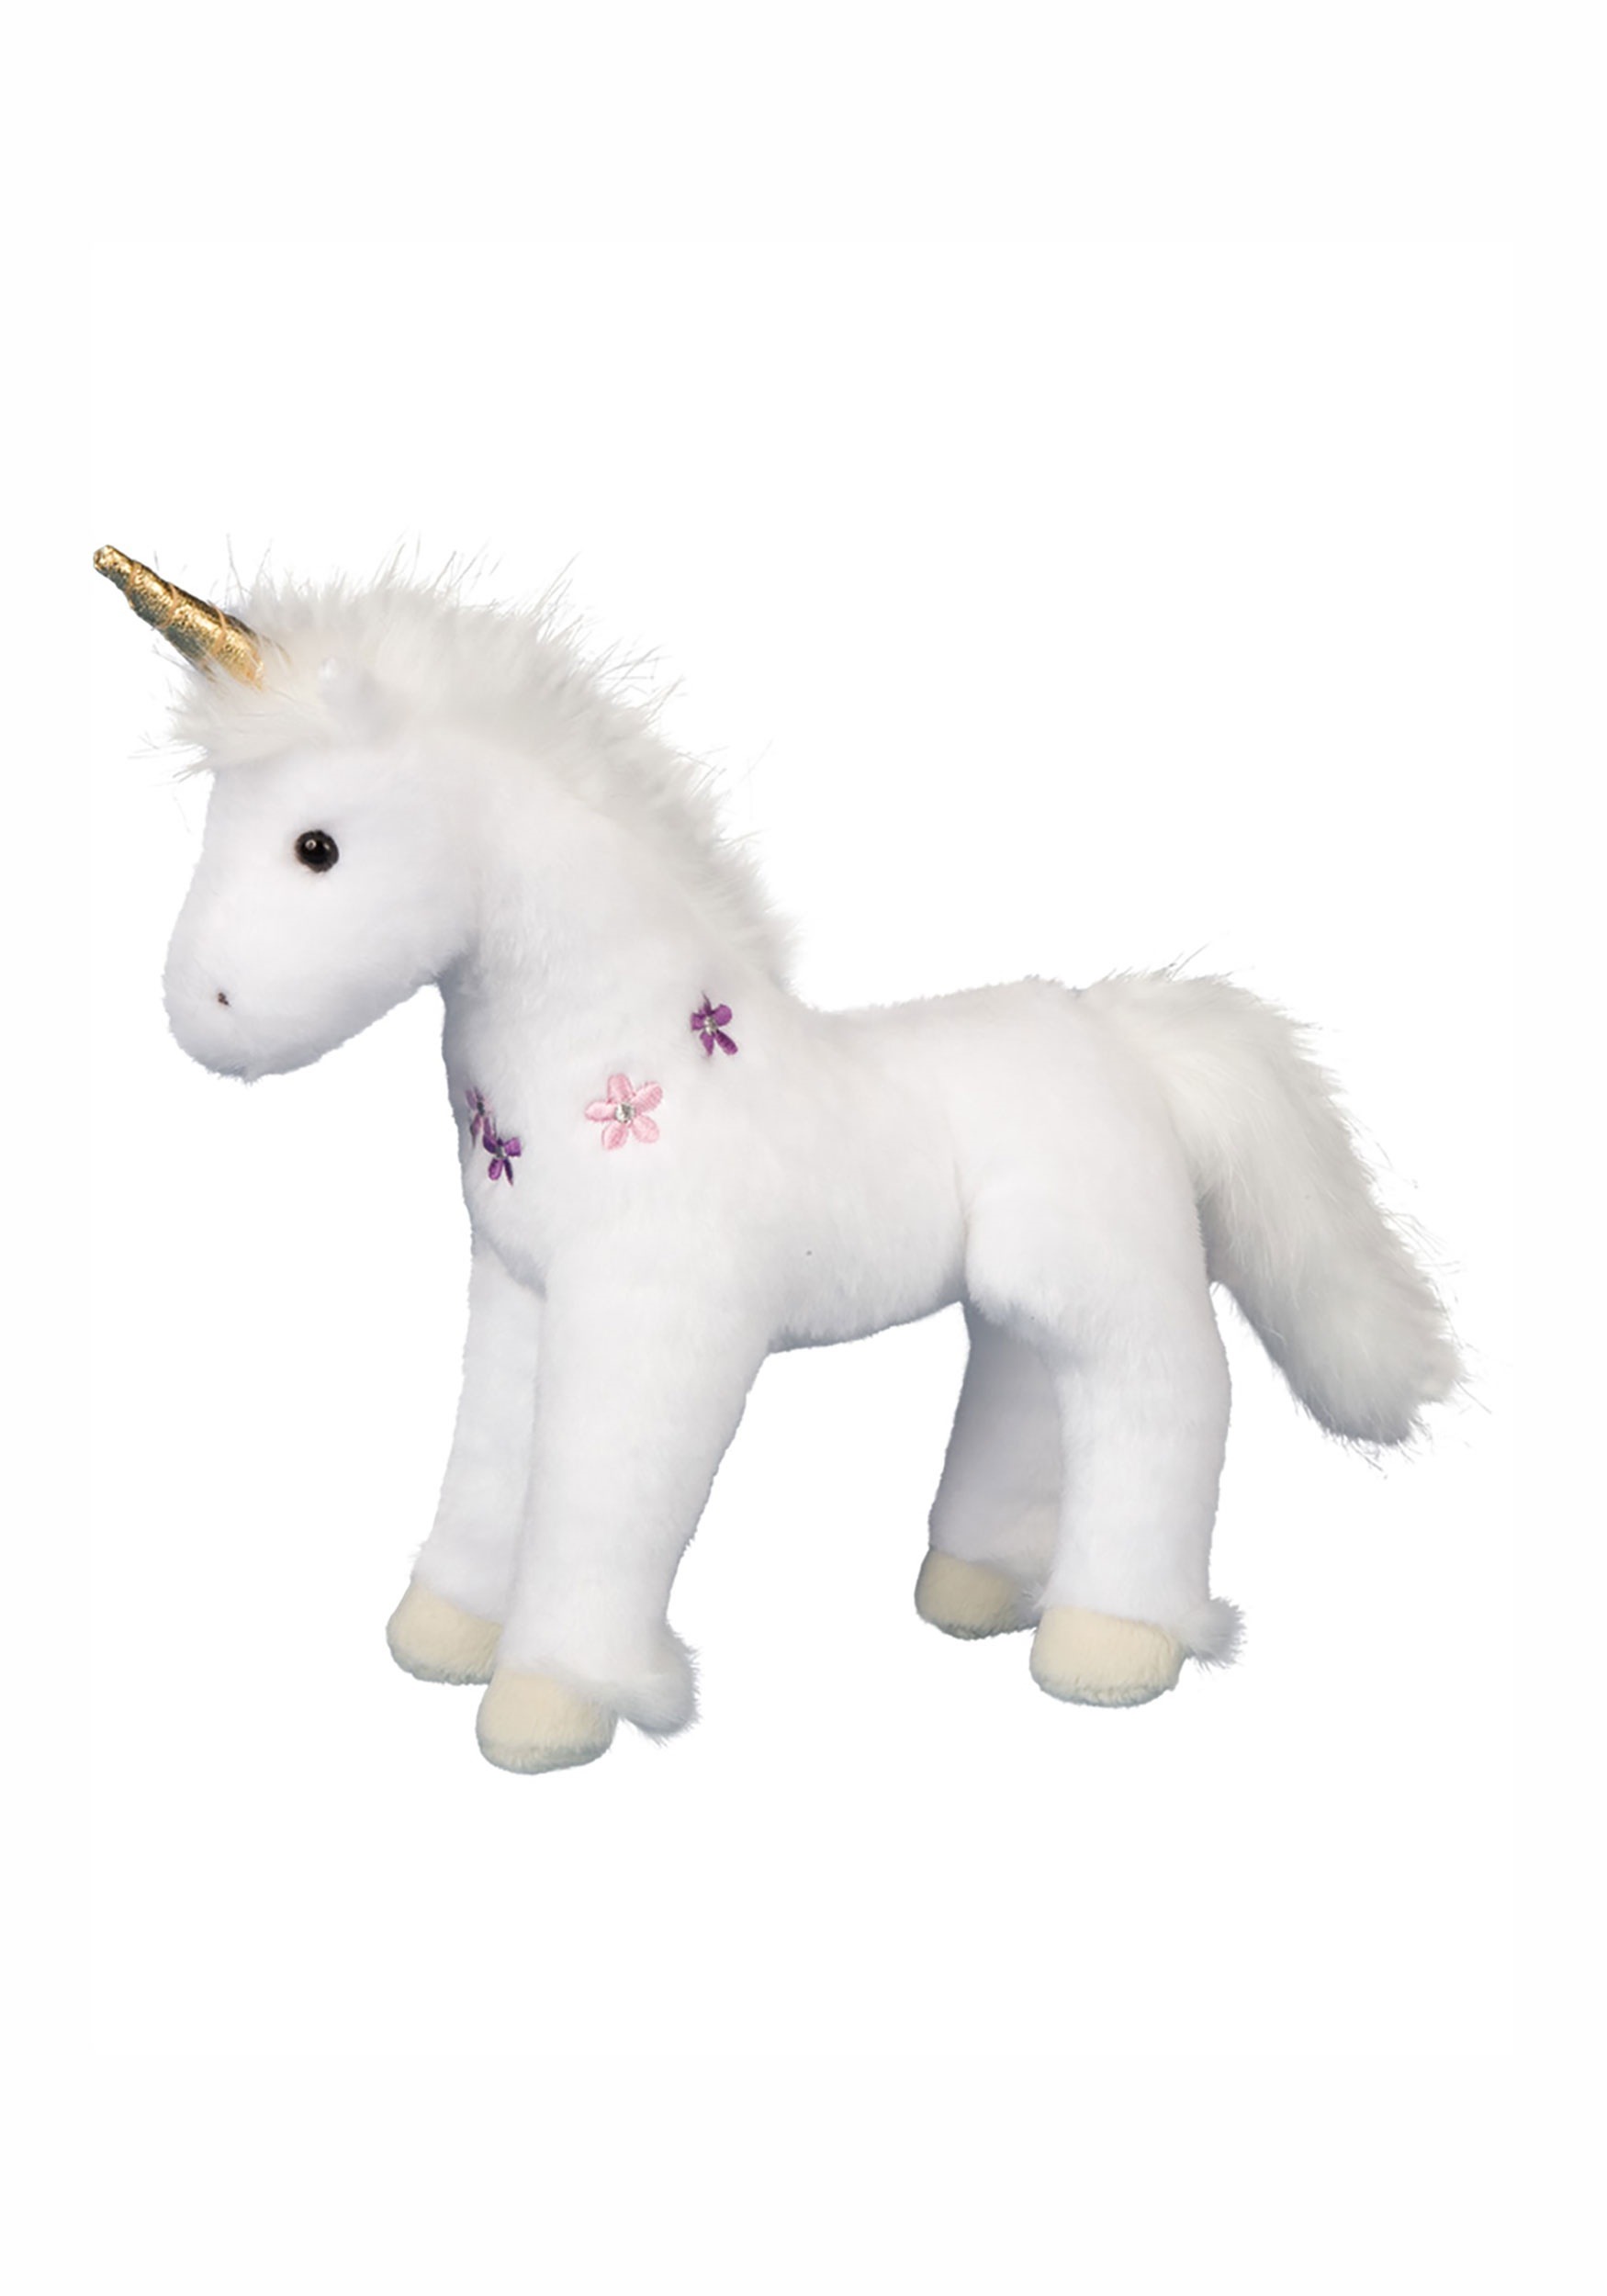 small stuffed unicorn